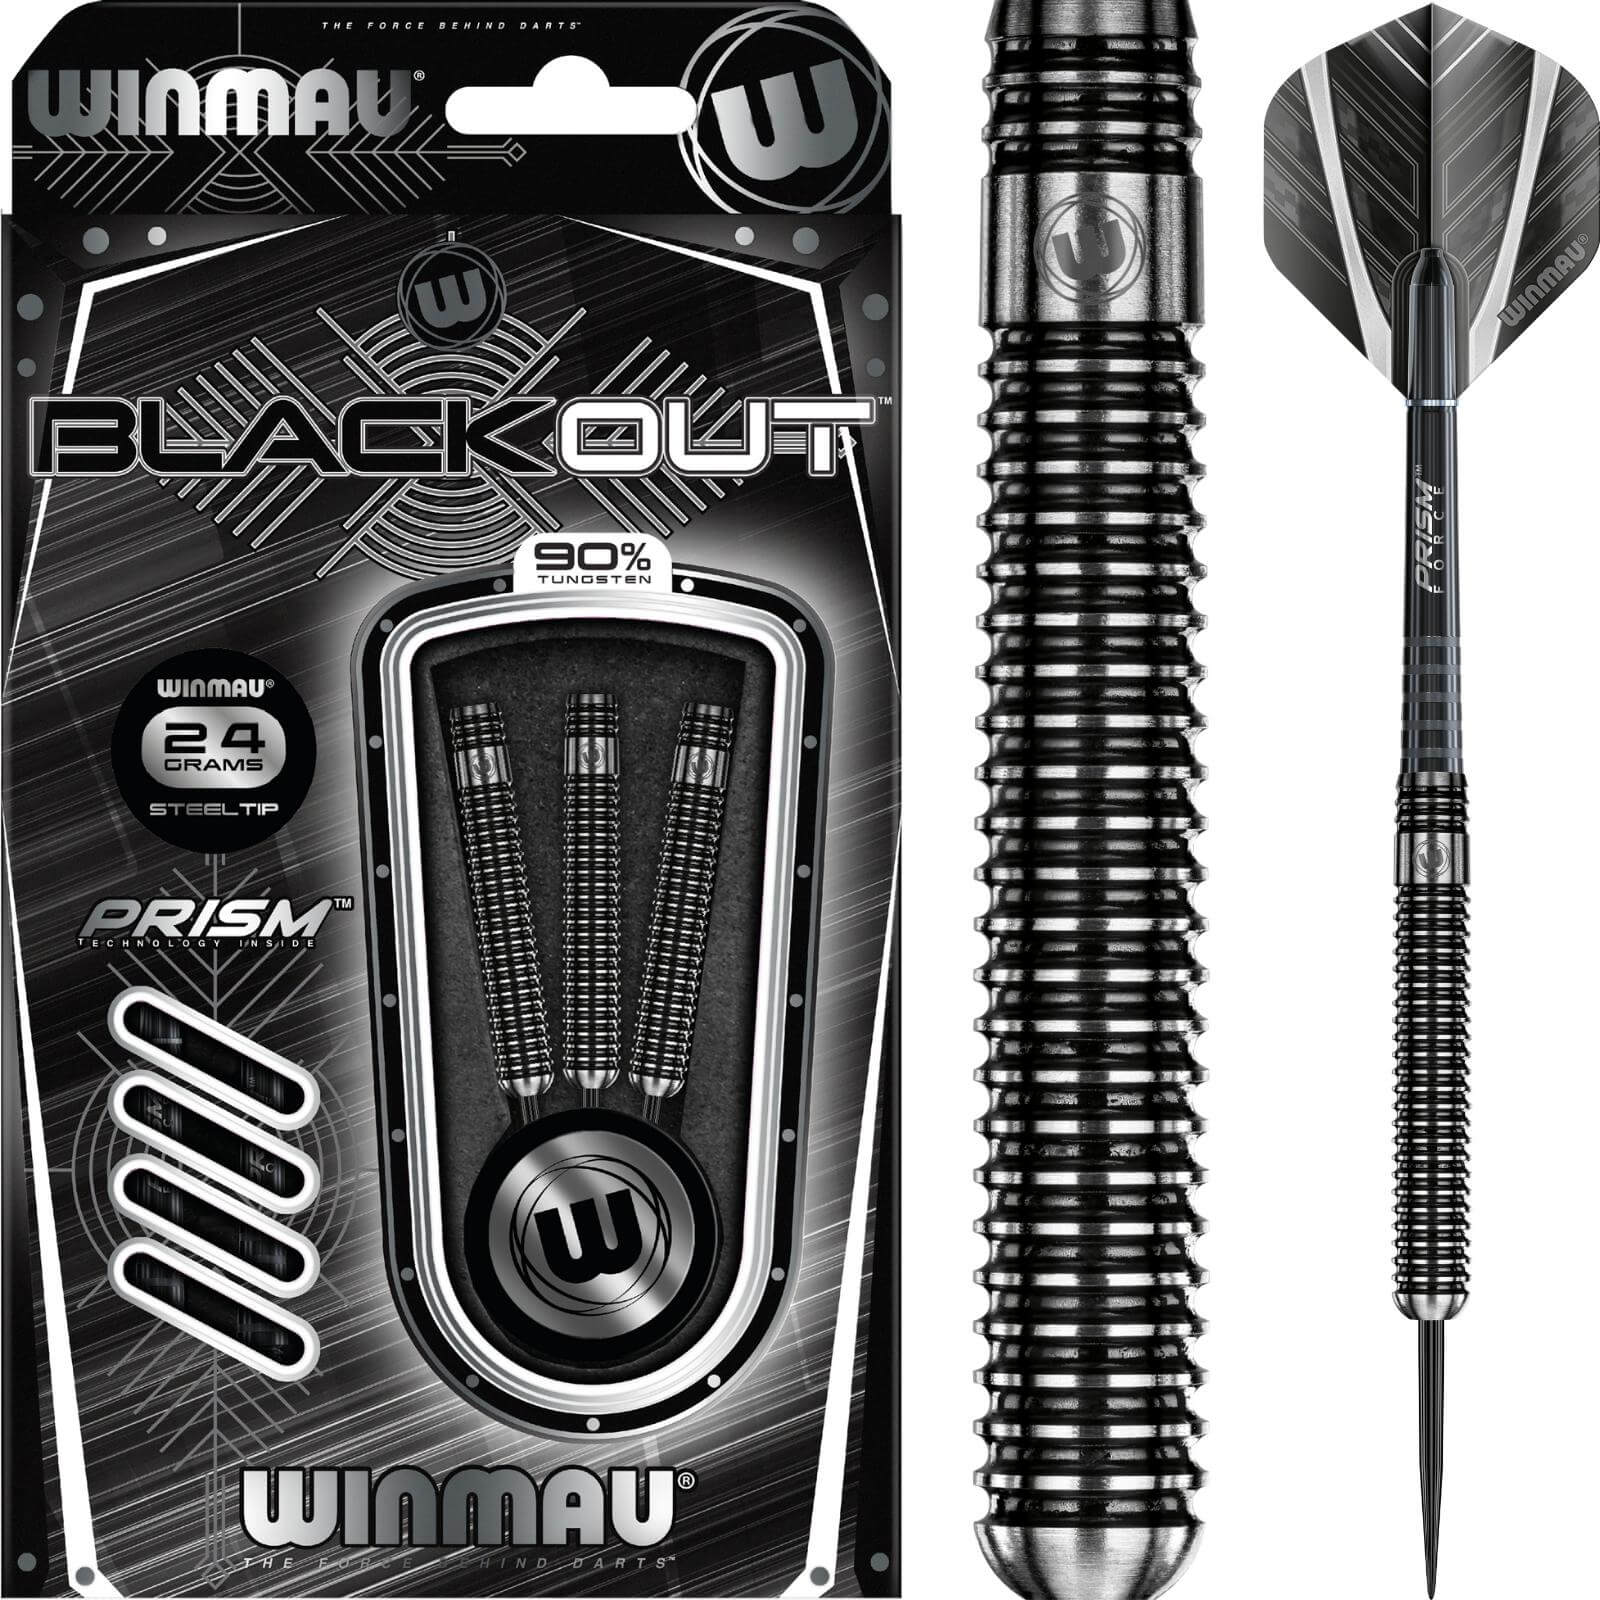 Darts - Winmau - Blackout Darts - Steel Tip - 90% Tungsten - 22g 24g 26g 